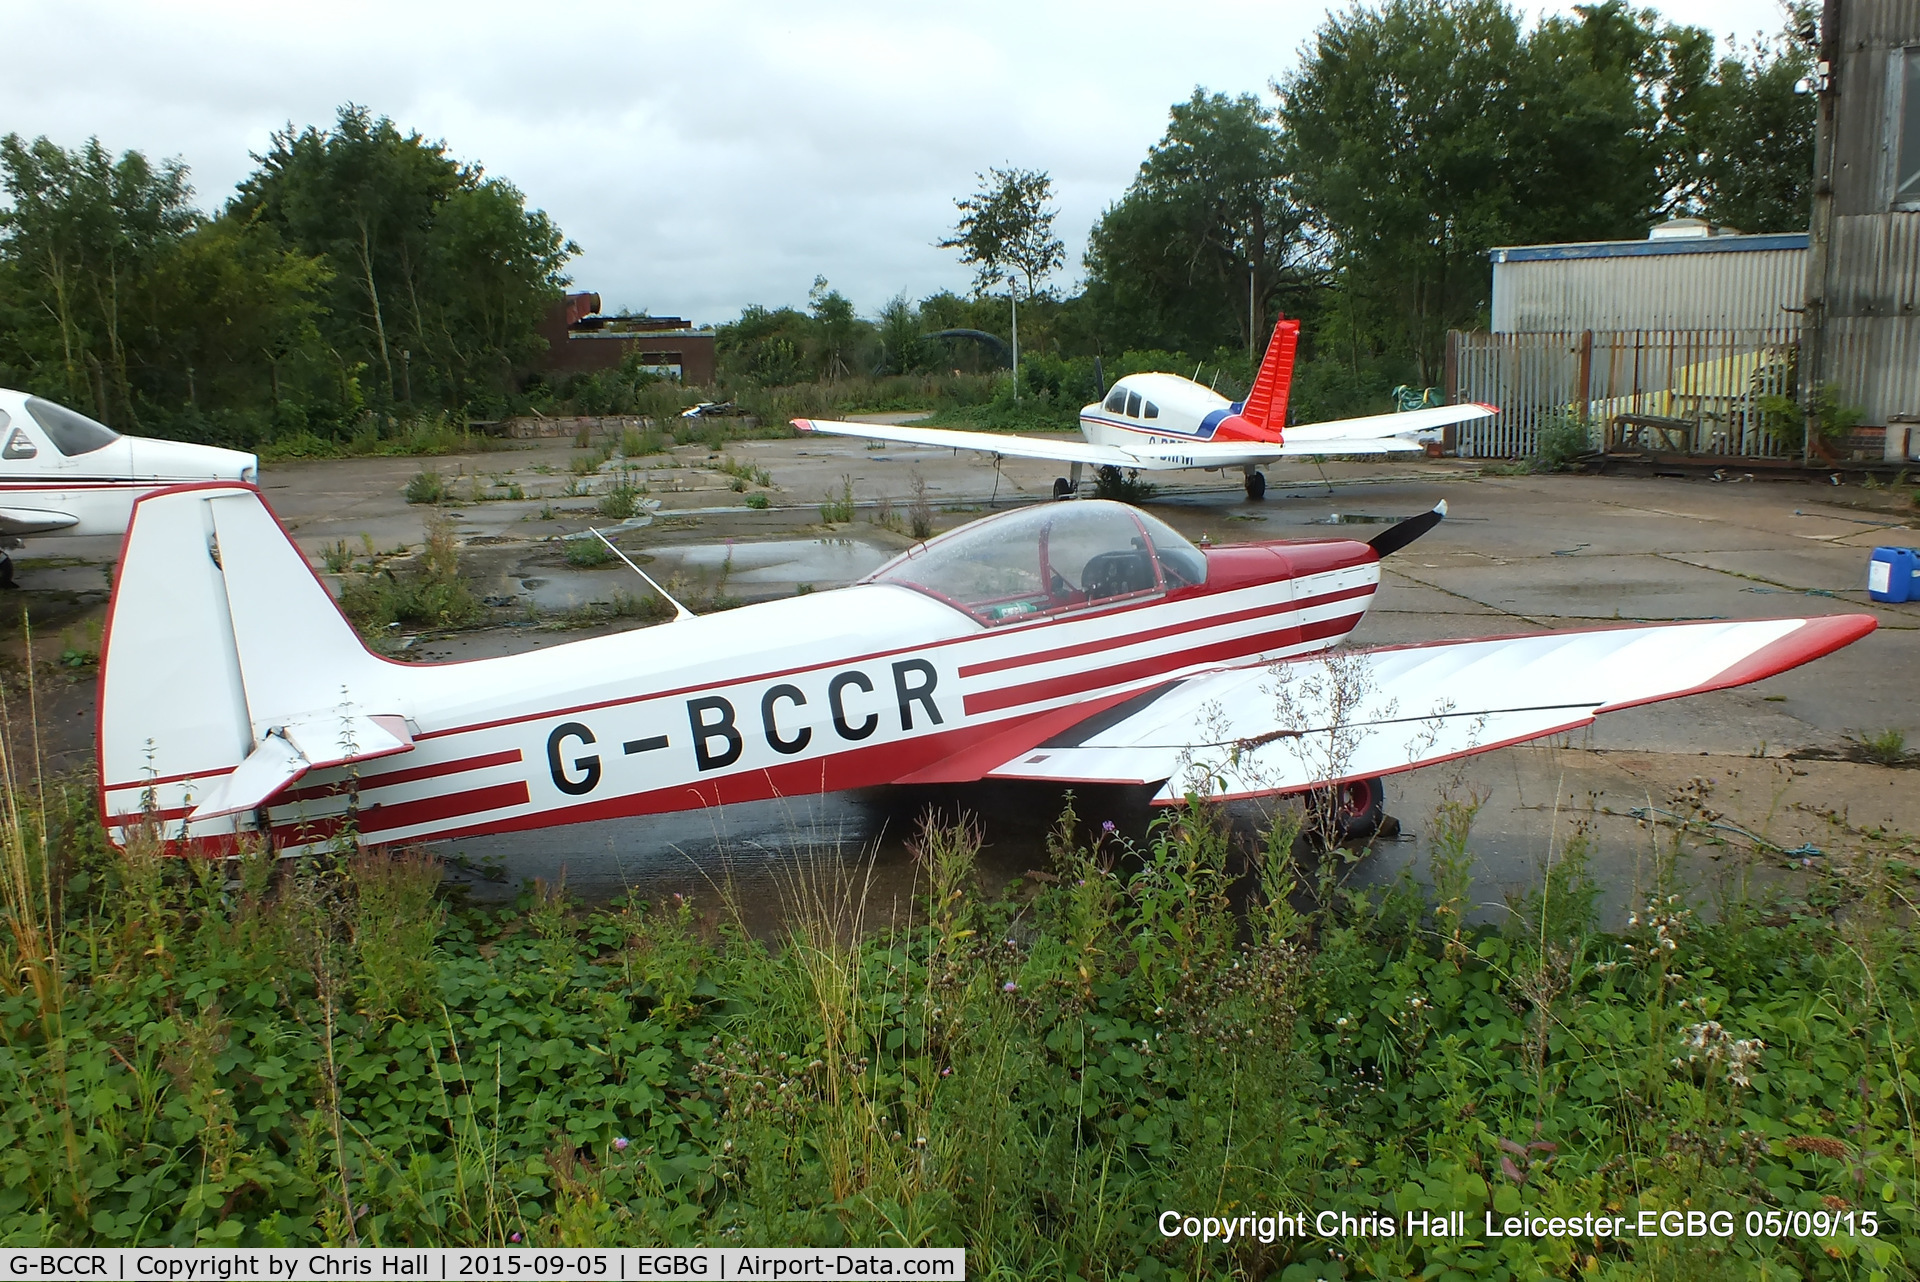 G-BCCR, 1975 Piel CP-301 Emeraude C/N PFA 712, at Leicester